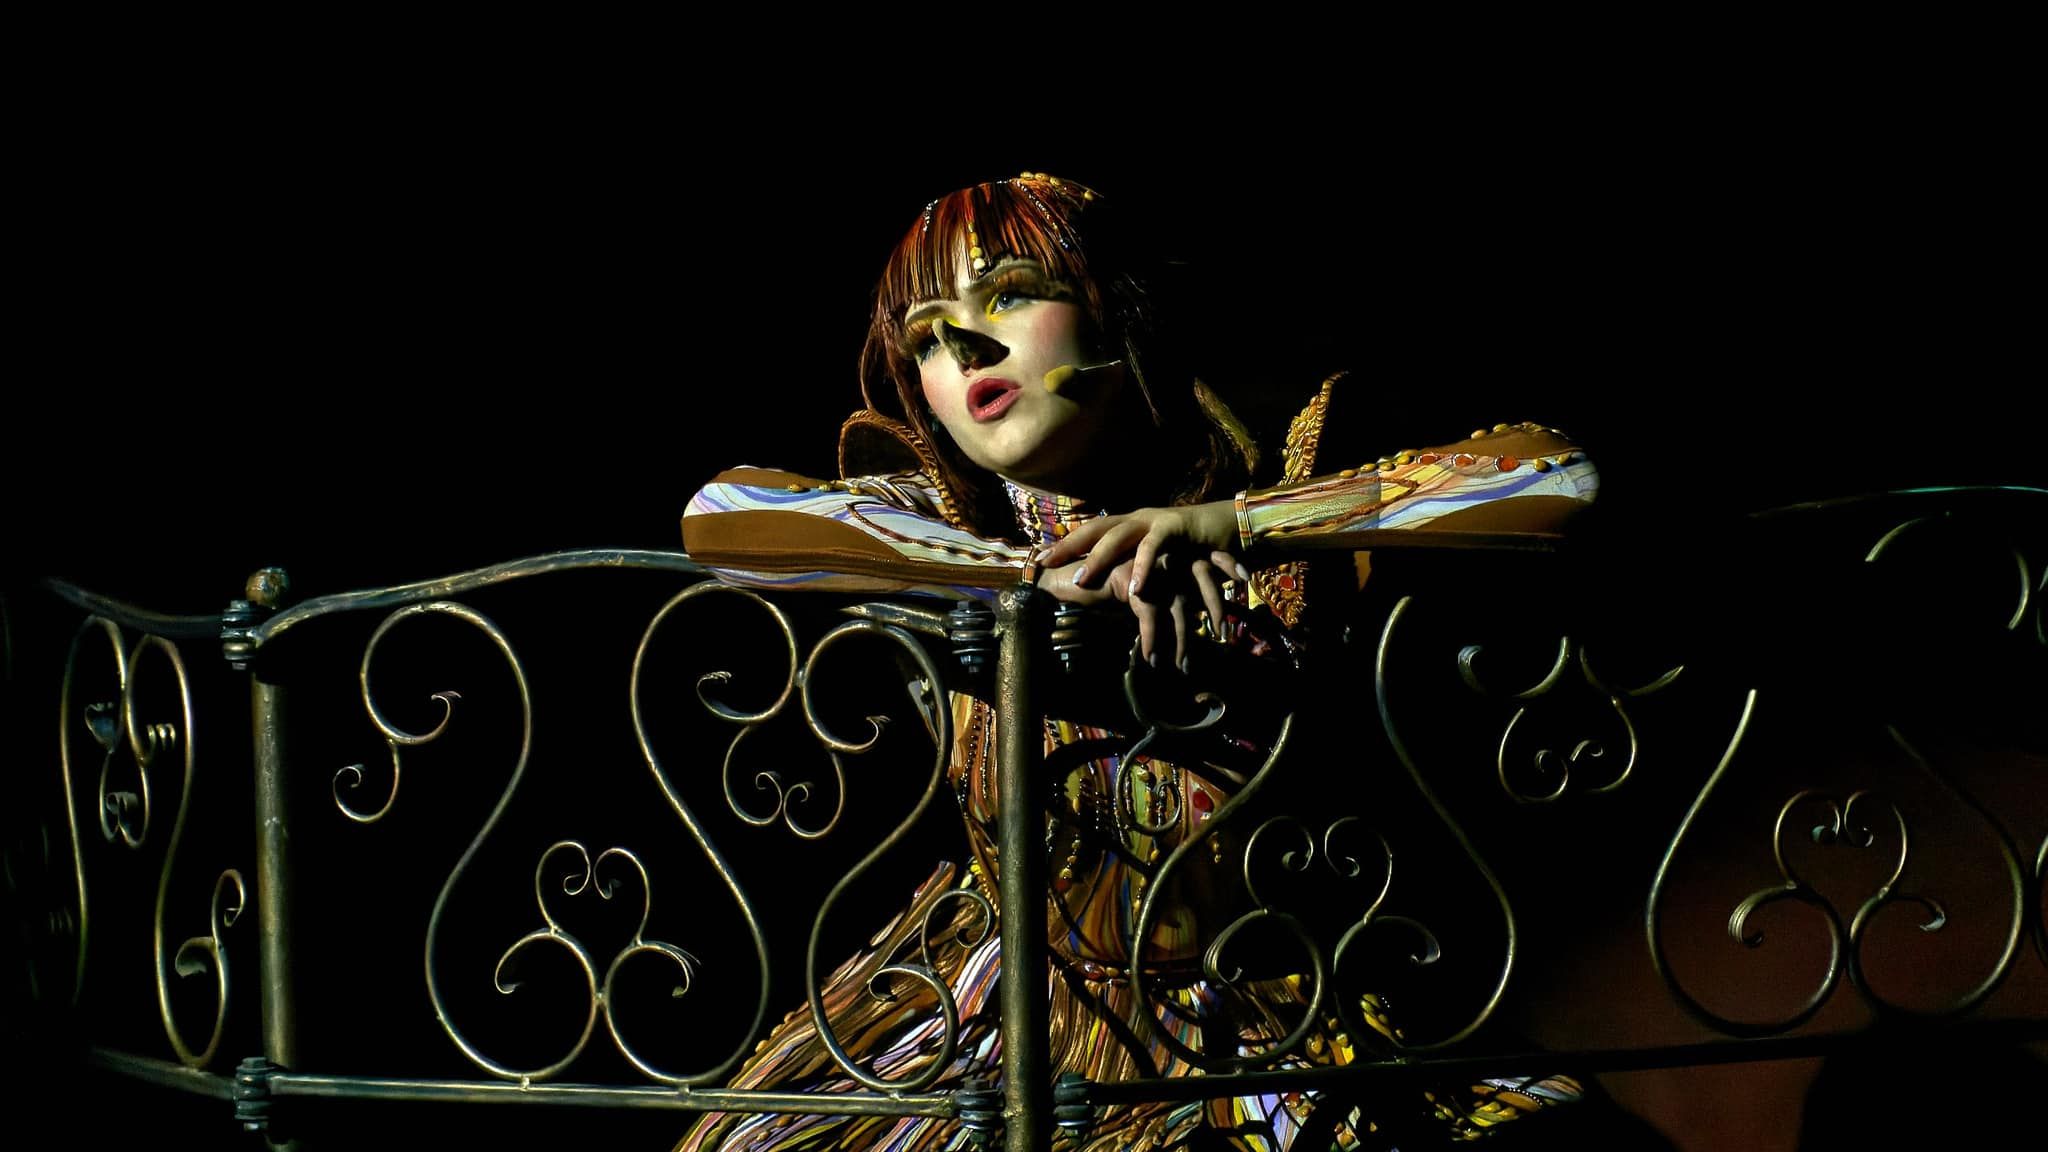 «Піноккія» — бродвейське дійство у Київській опері на Подолі:  з драматургічною інтригою, яскравою музикою, запальними танцями,  цікавими сценографією і костюмами.